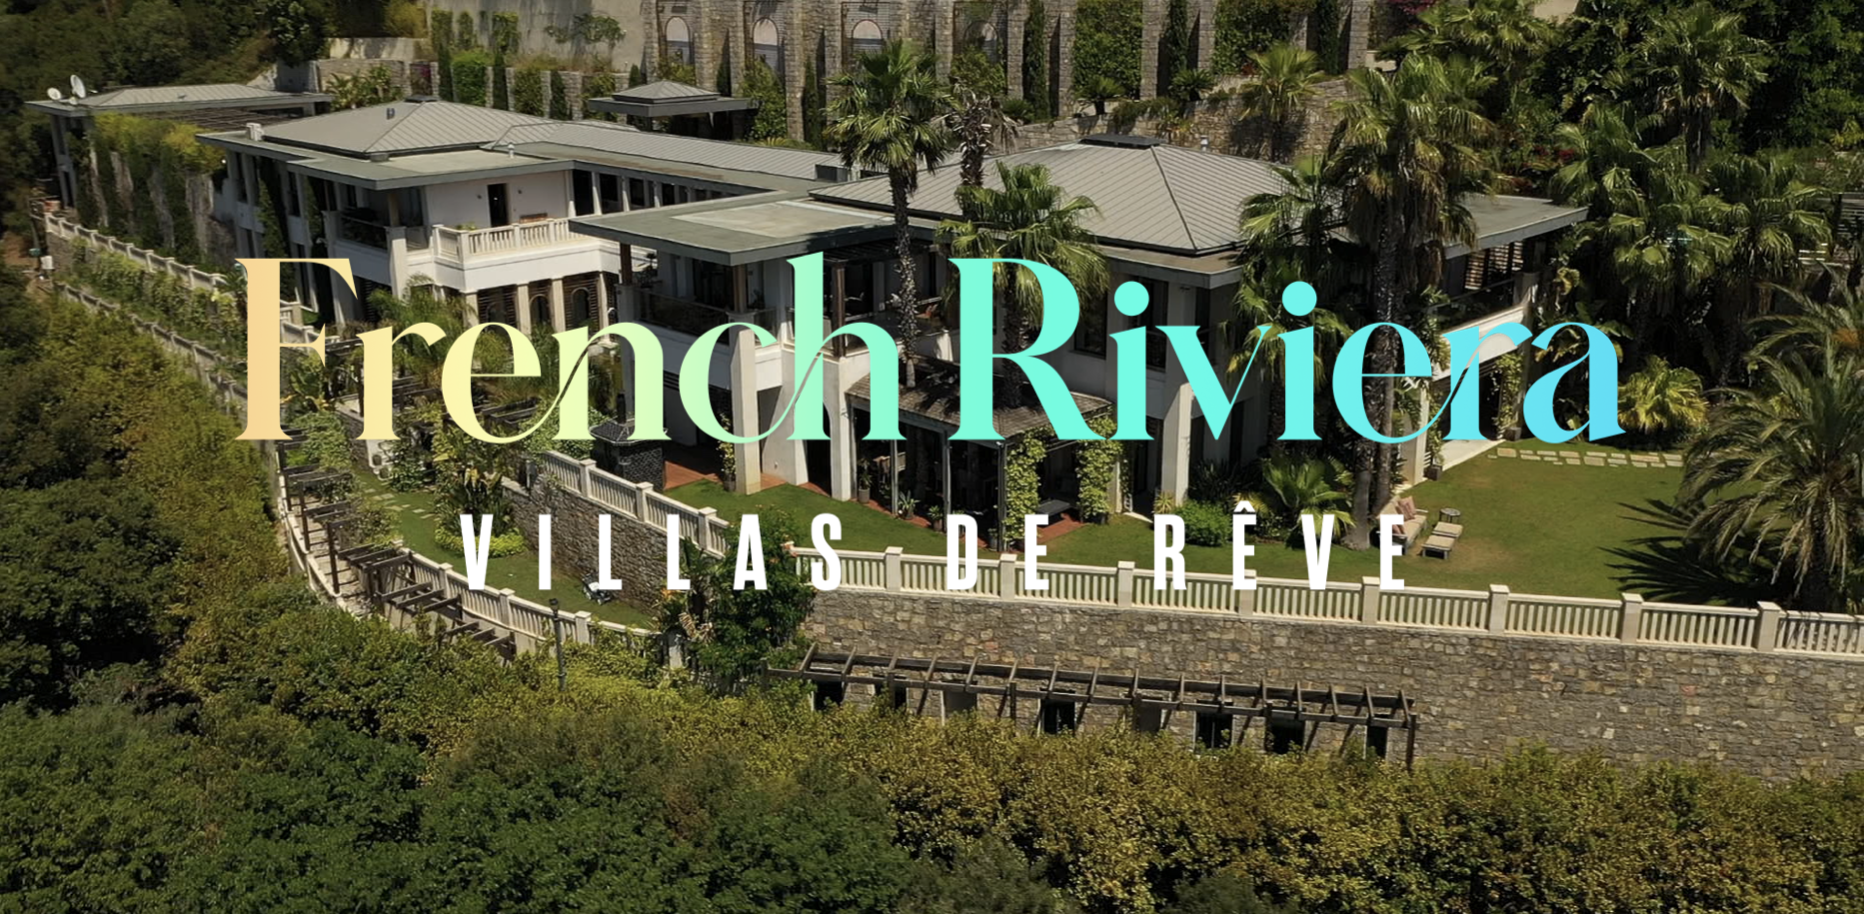 French Riviera : villas de rêve